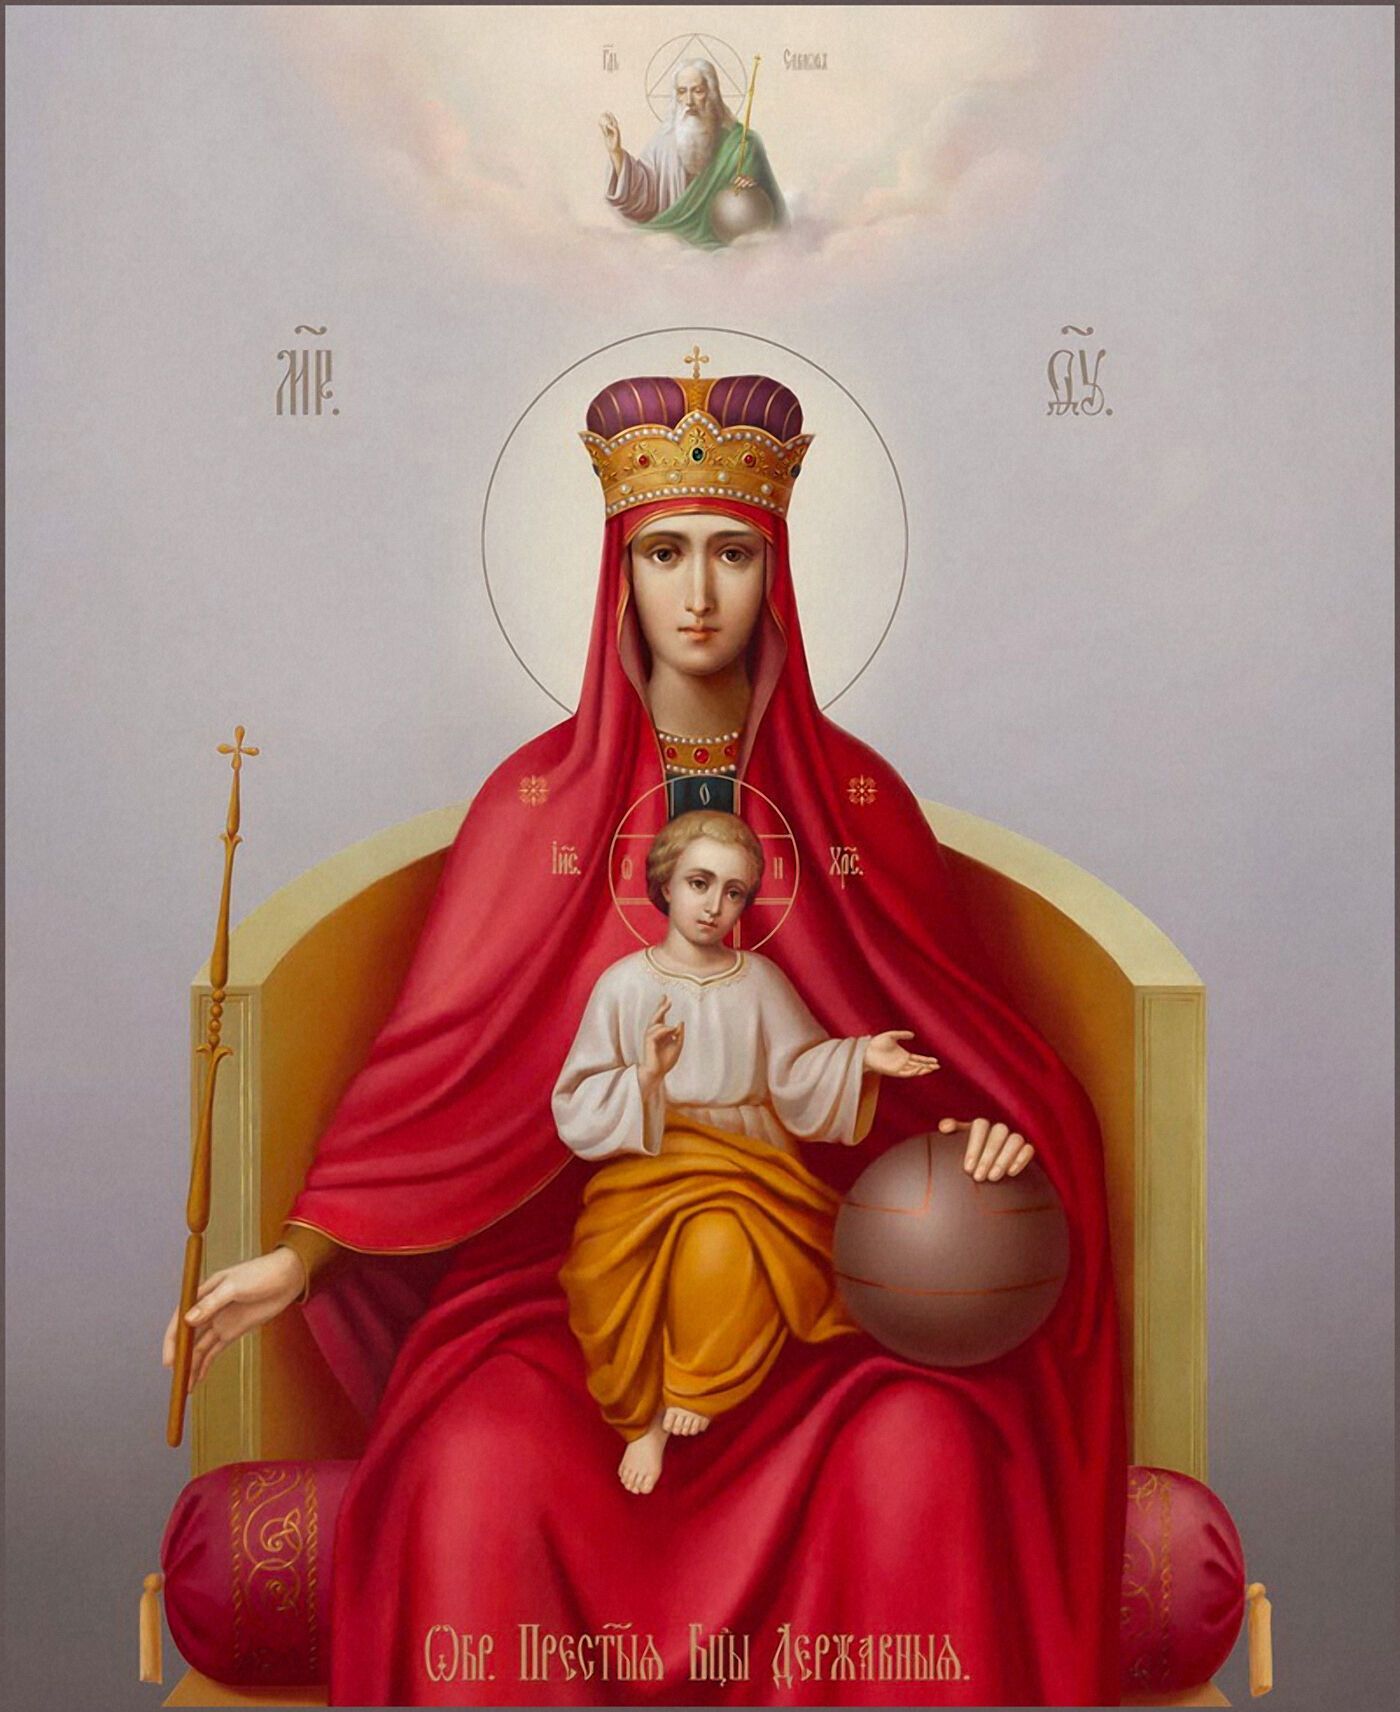 Икона Божьей Матери "Державная" была обретена 15 марта 1917 года